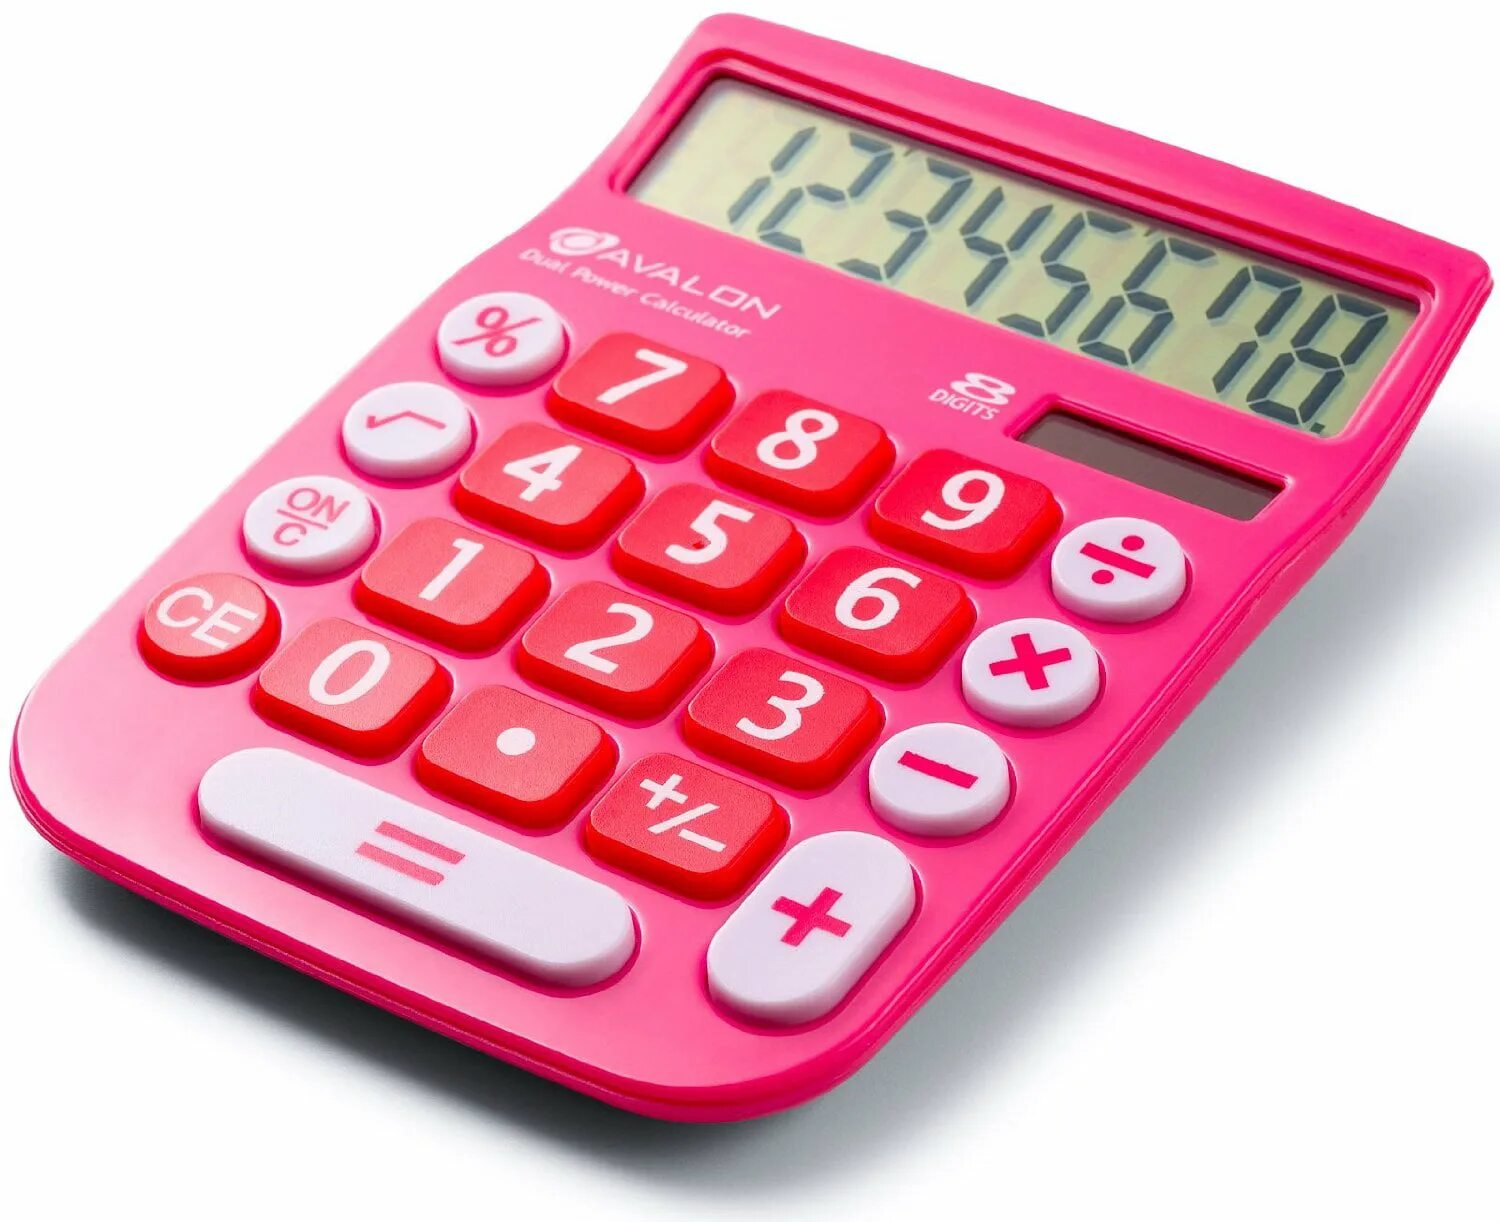 Калькулятор крошки. Электронный калькулятор. Розовый калькулятор. Красивый калькулятор. Калькулятор для детей.